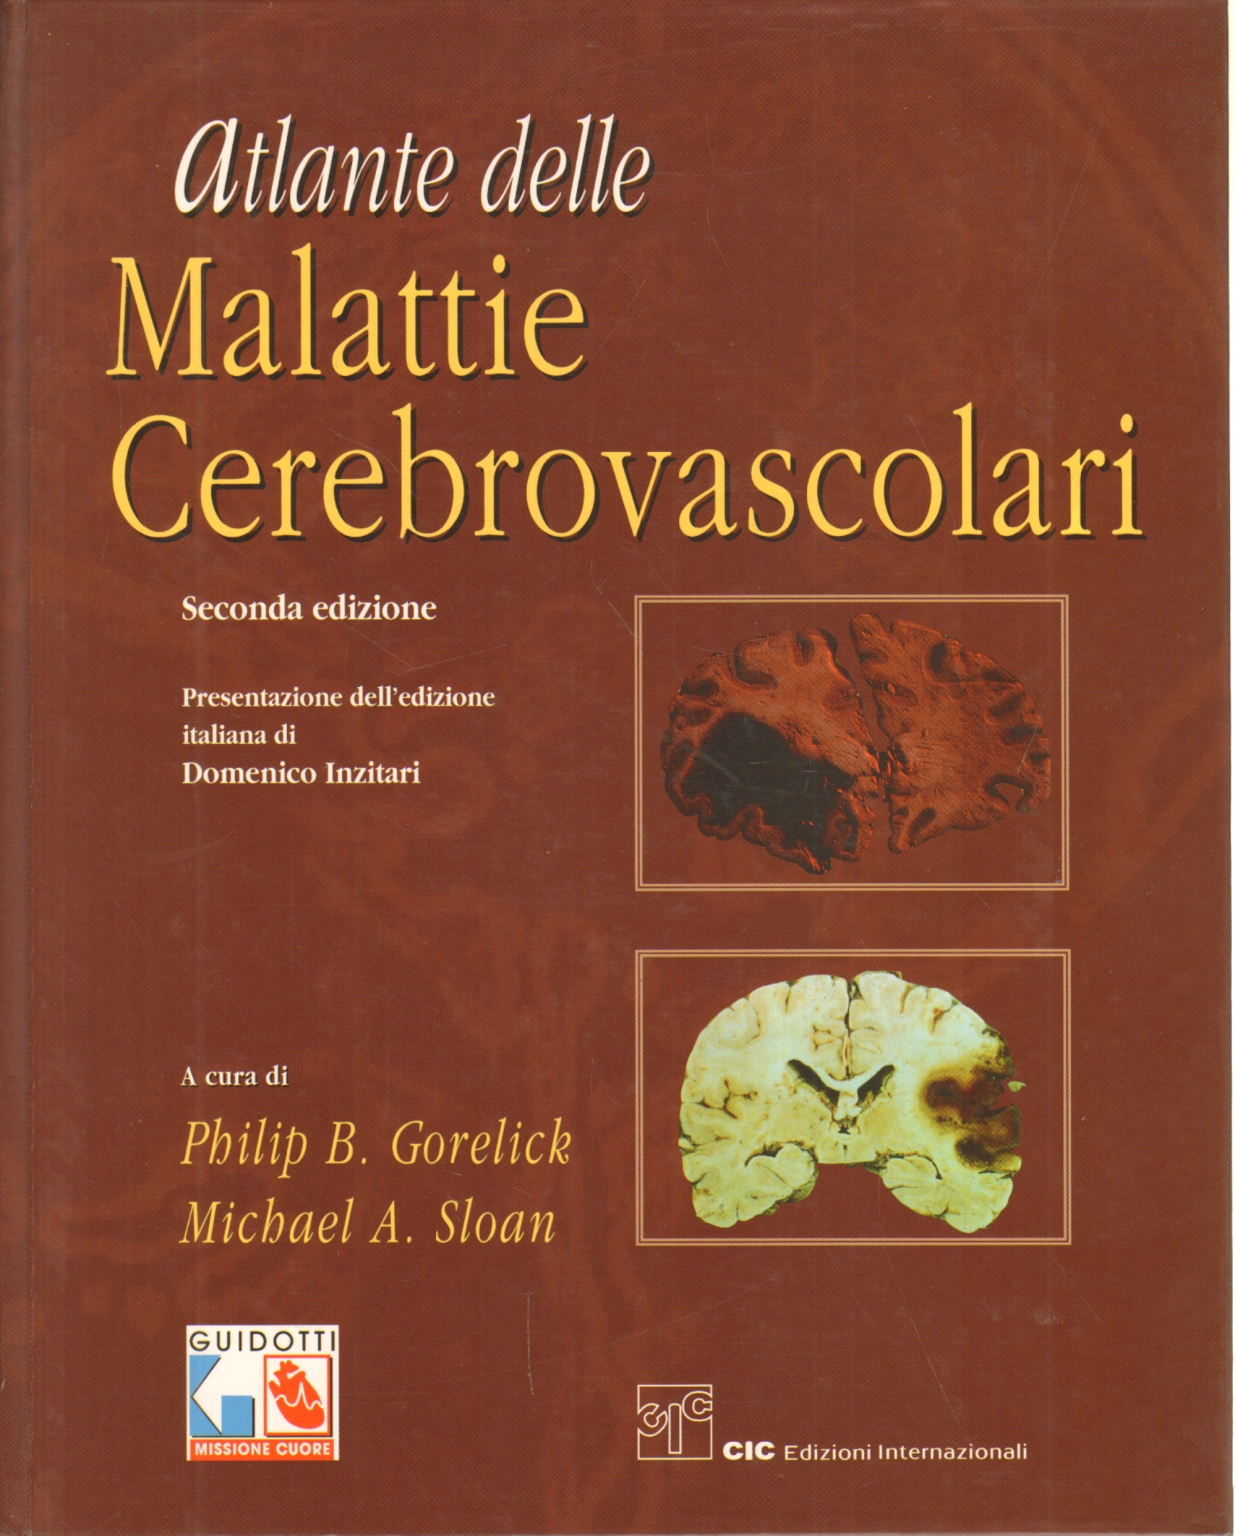 Atlante delle malattie cerebrovascolari, Philip B. Gorelick Michael A. Sloan